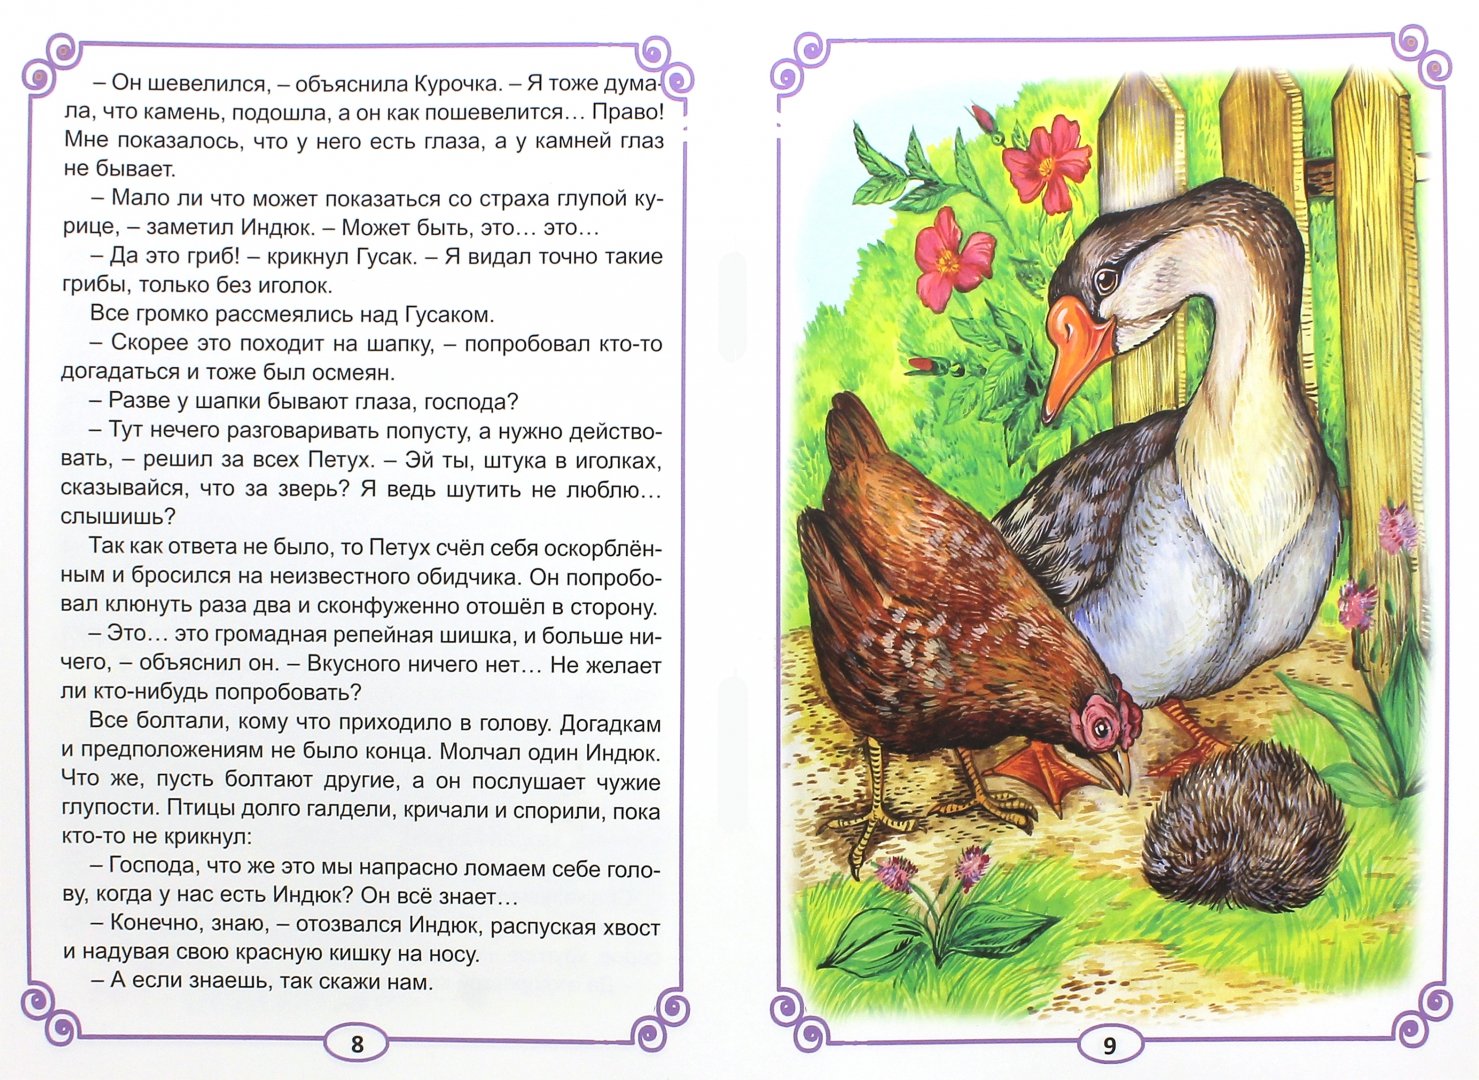 Иллюстрация 1 из 10 для Умнее всех - Дмитрий Мамин-Сибиряк | Лабиринт - книги. Источник: Лабиринт